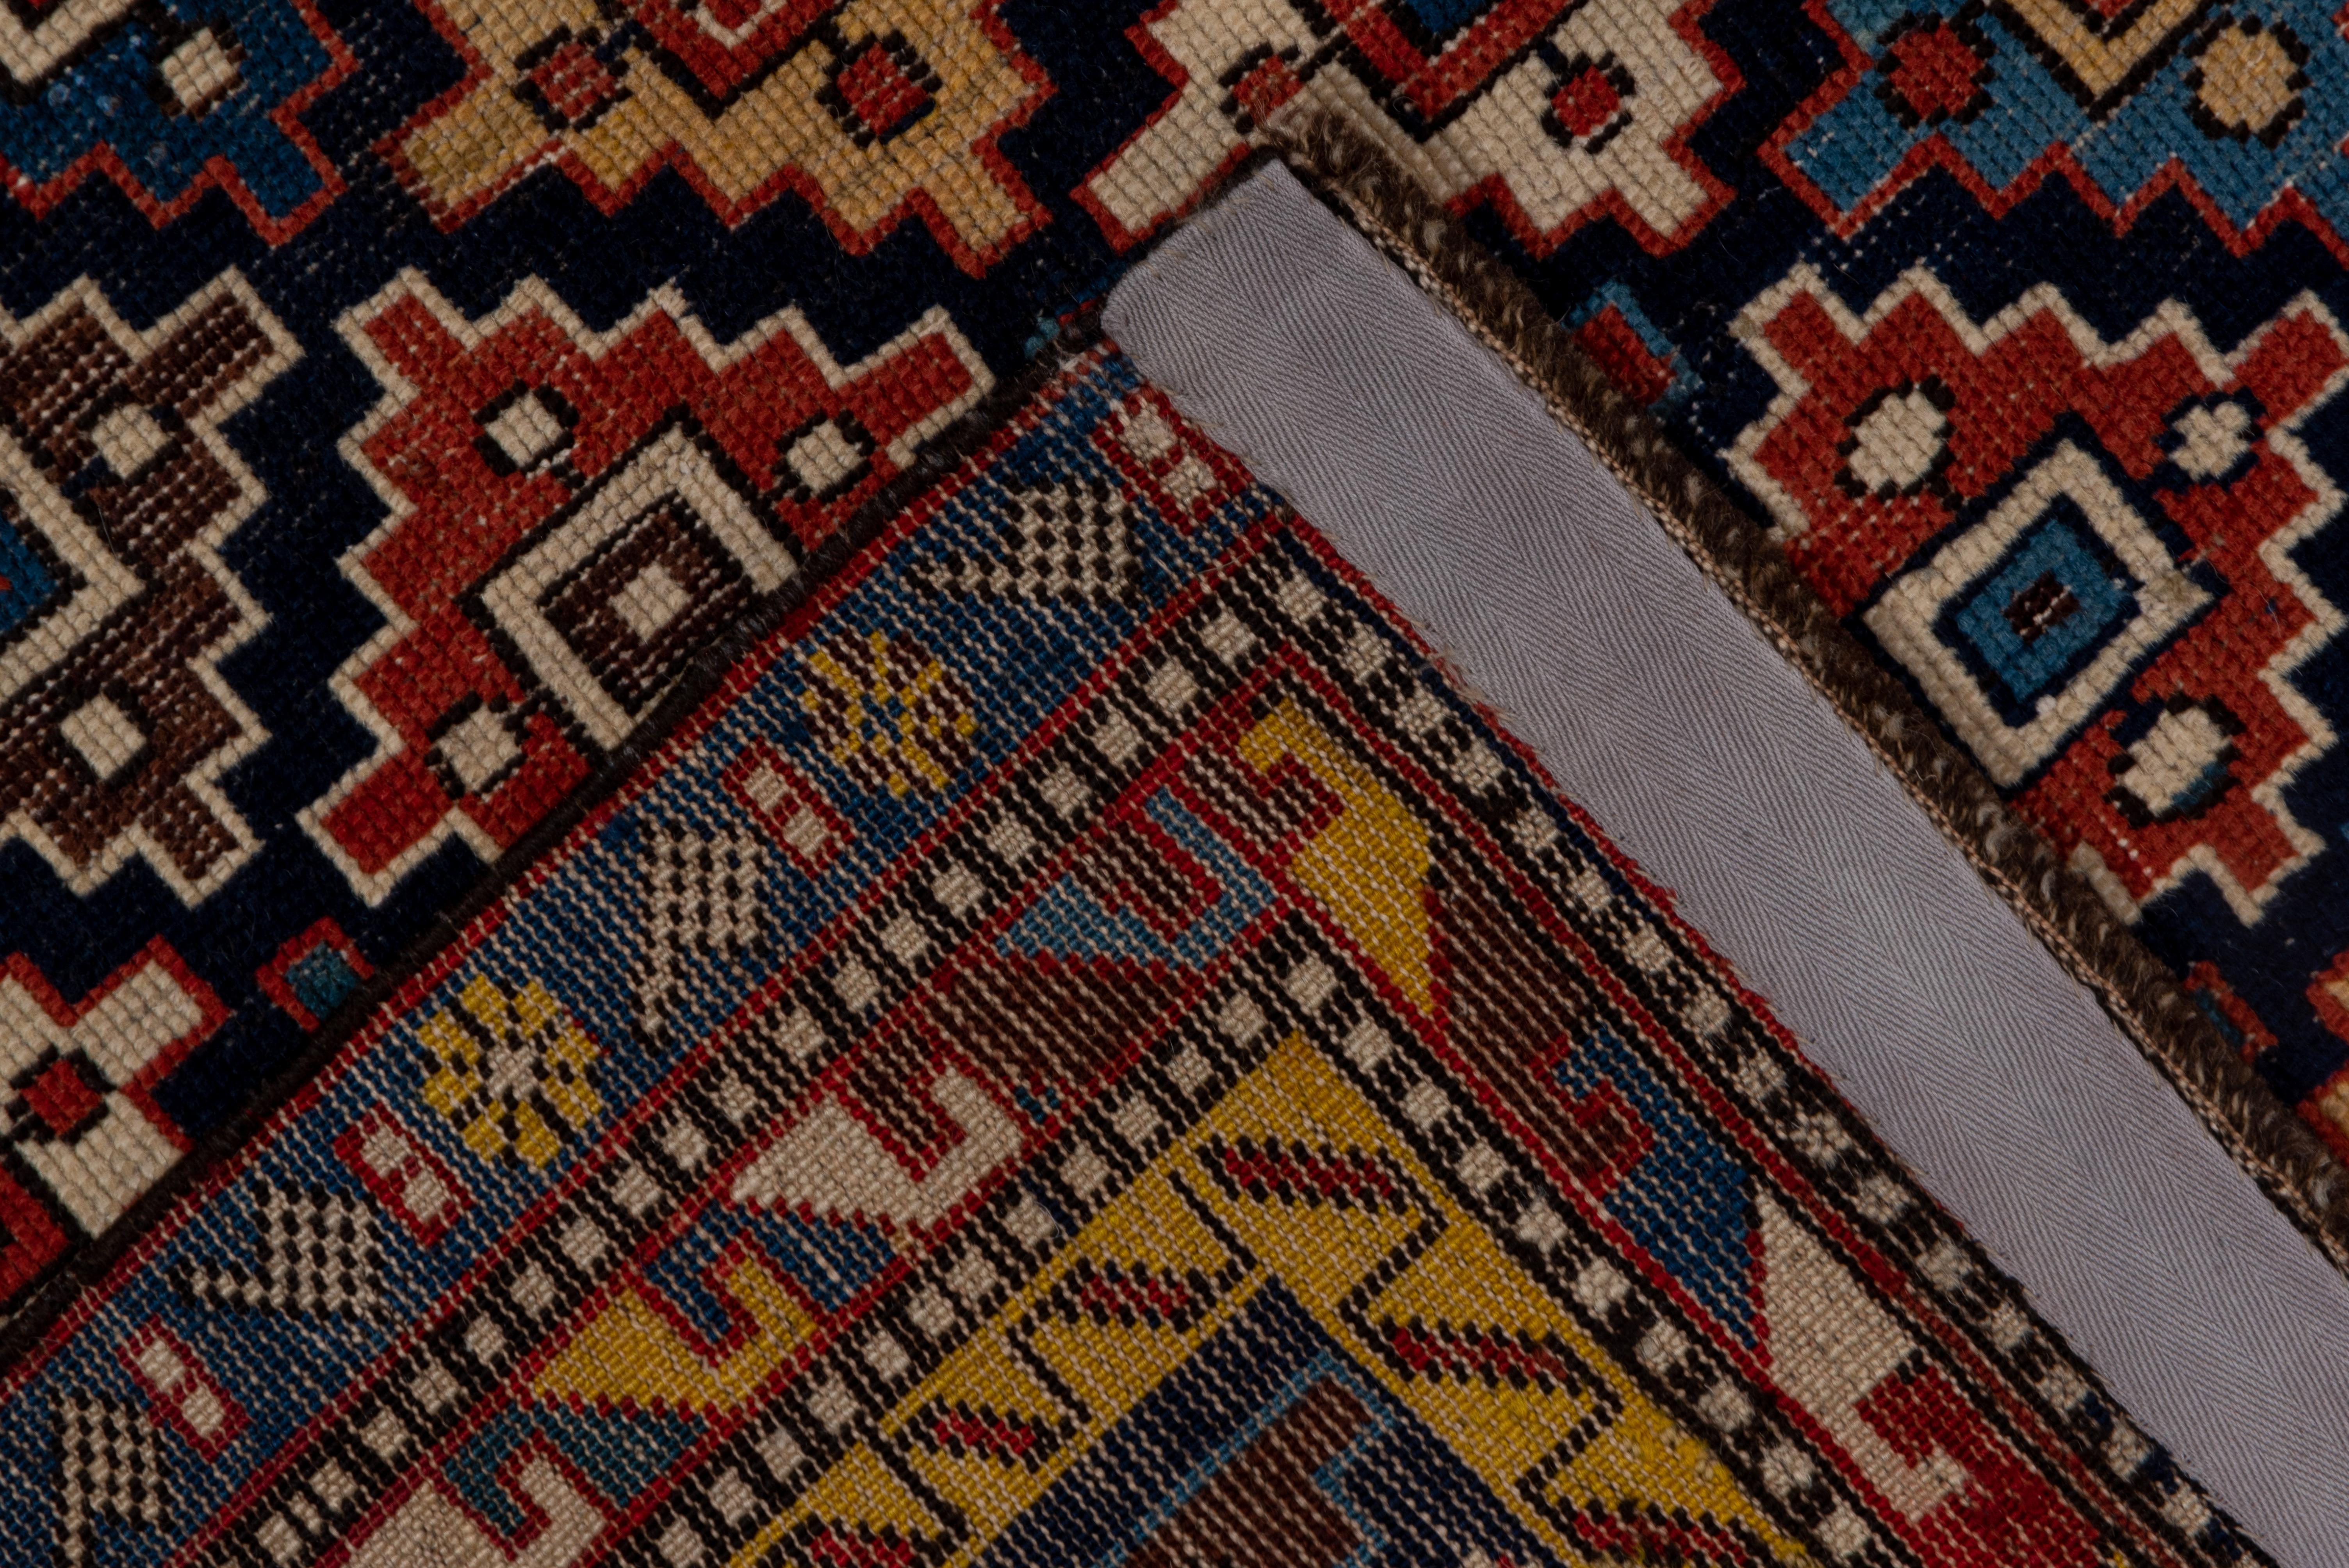 Ce tapis aux couleurs vives de l'est du Caucase présente un motif de diamants étagés, disposés de façon rapprochée et aléatoire, sur un fond indigo foncé. Le rouge, le crème, le sarcelle, les tons bleus et le jaune font partie des teintes de détail.